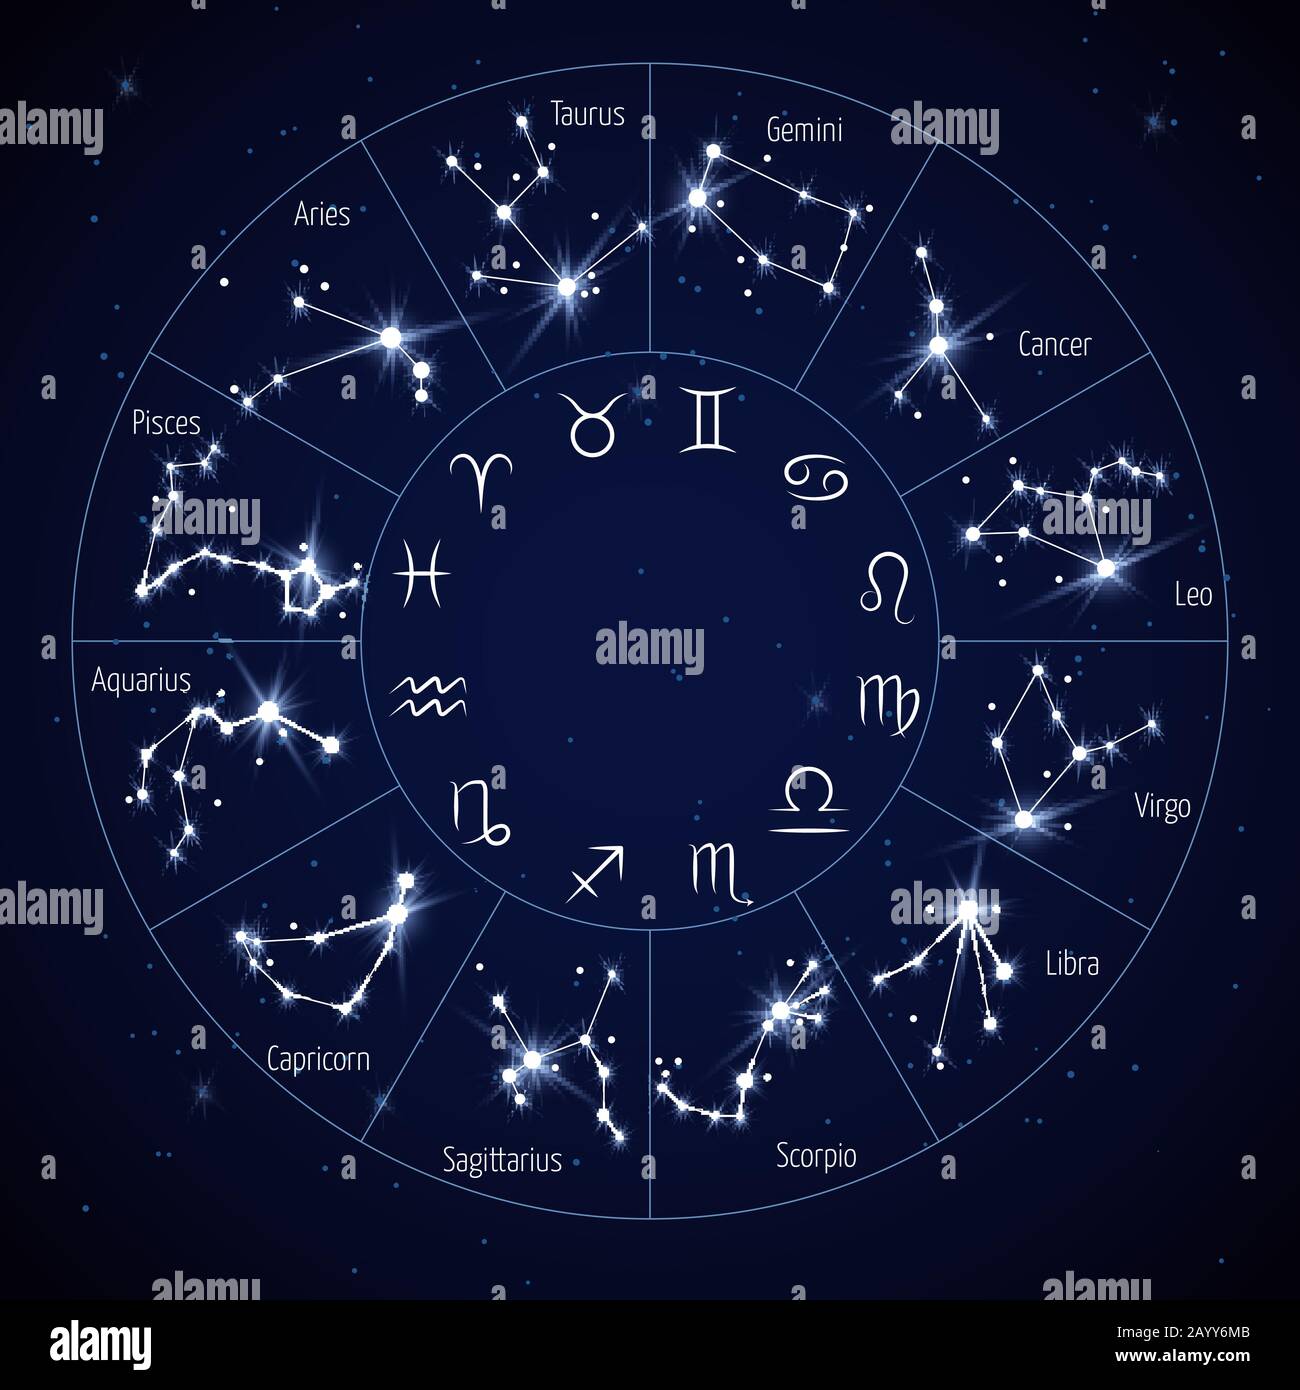 Zodiac constellation map with leo virgo scorpio libra aquarius ...